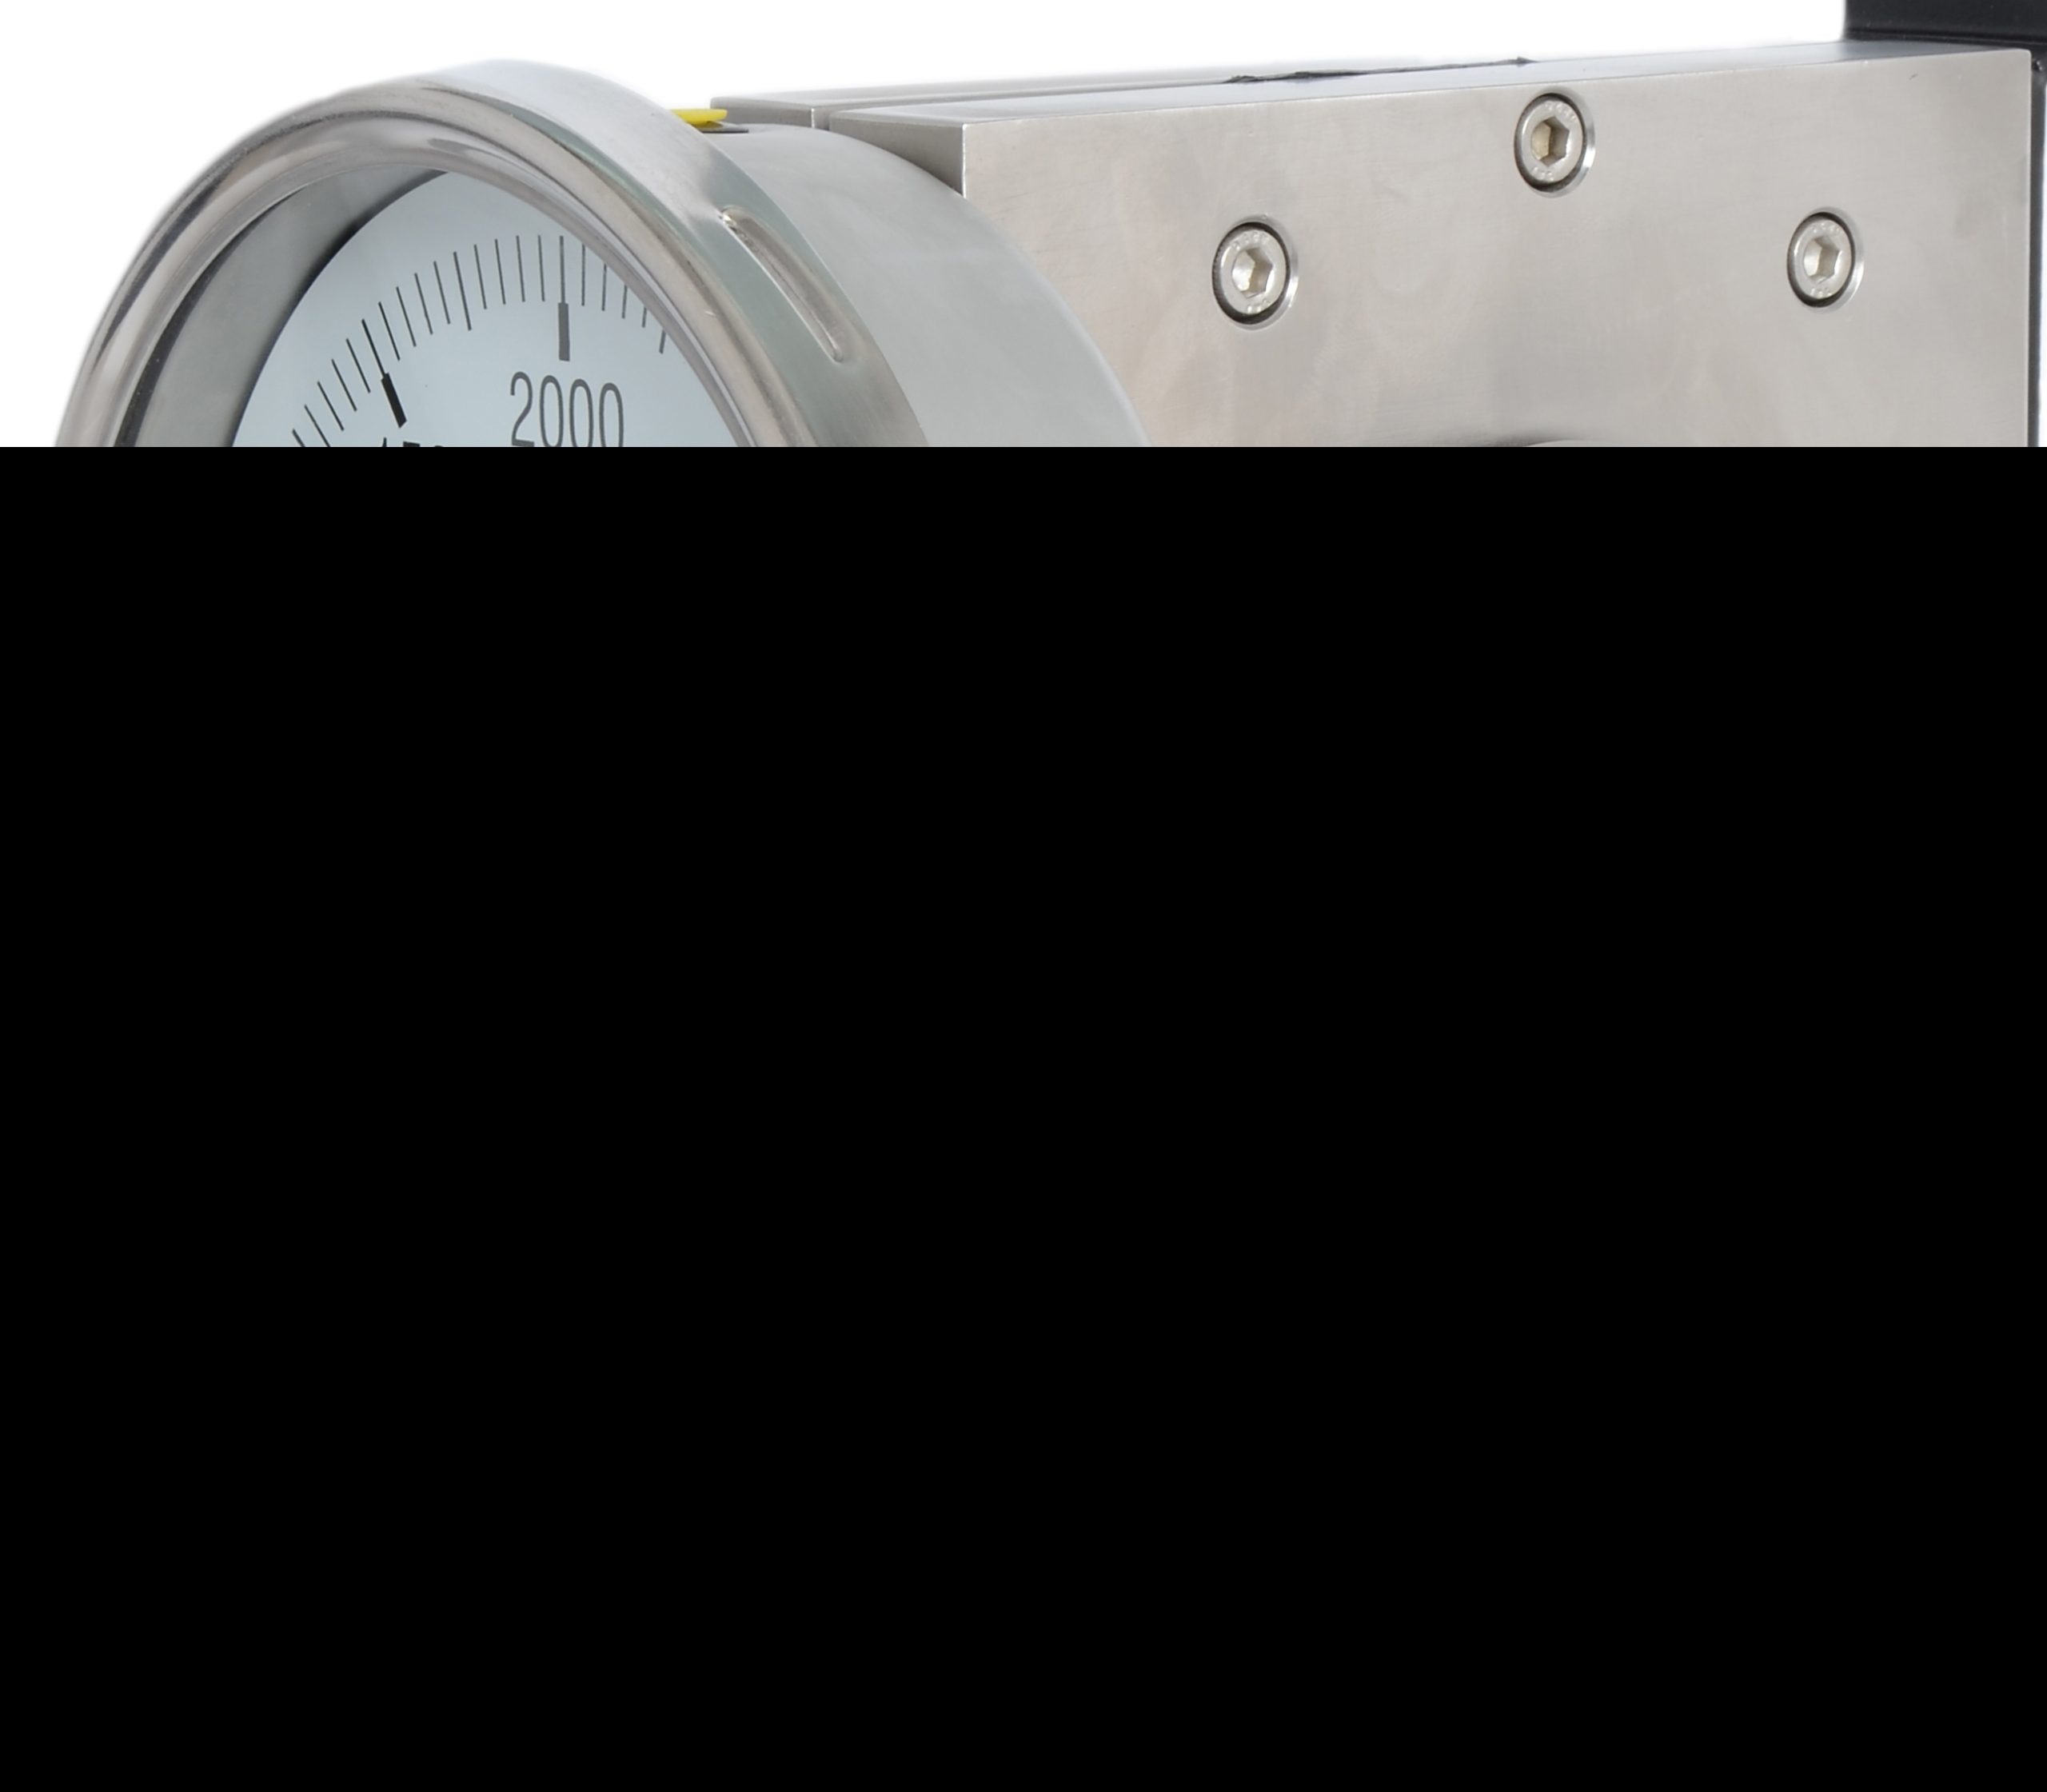 micro digital manometer differential pressure gauge